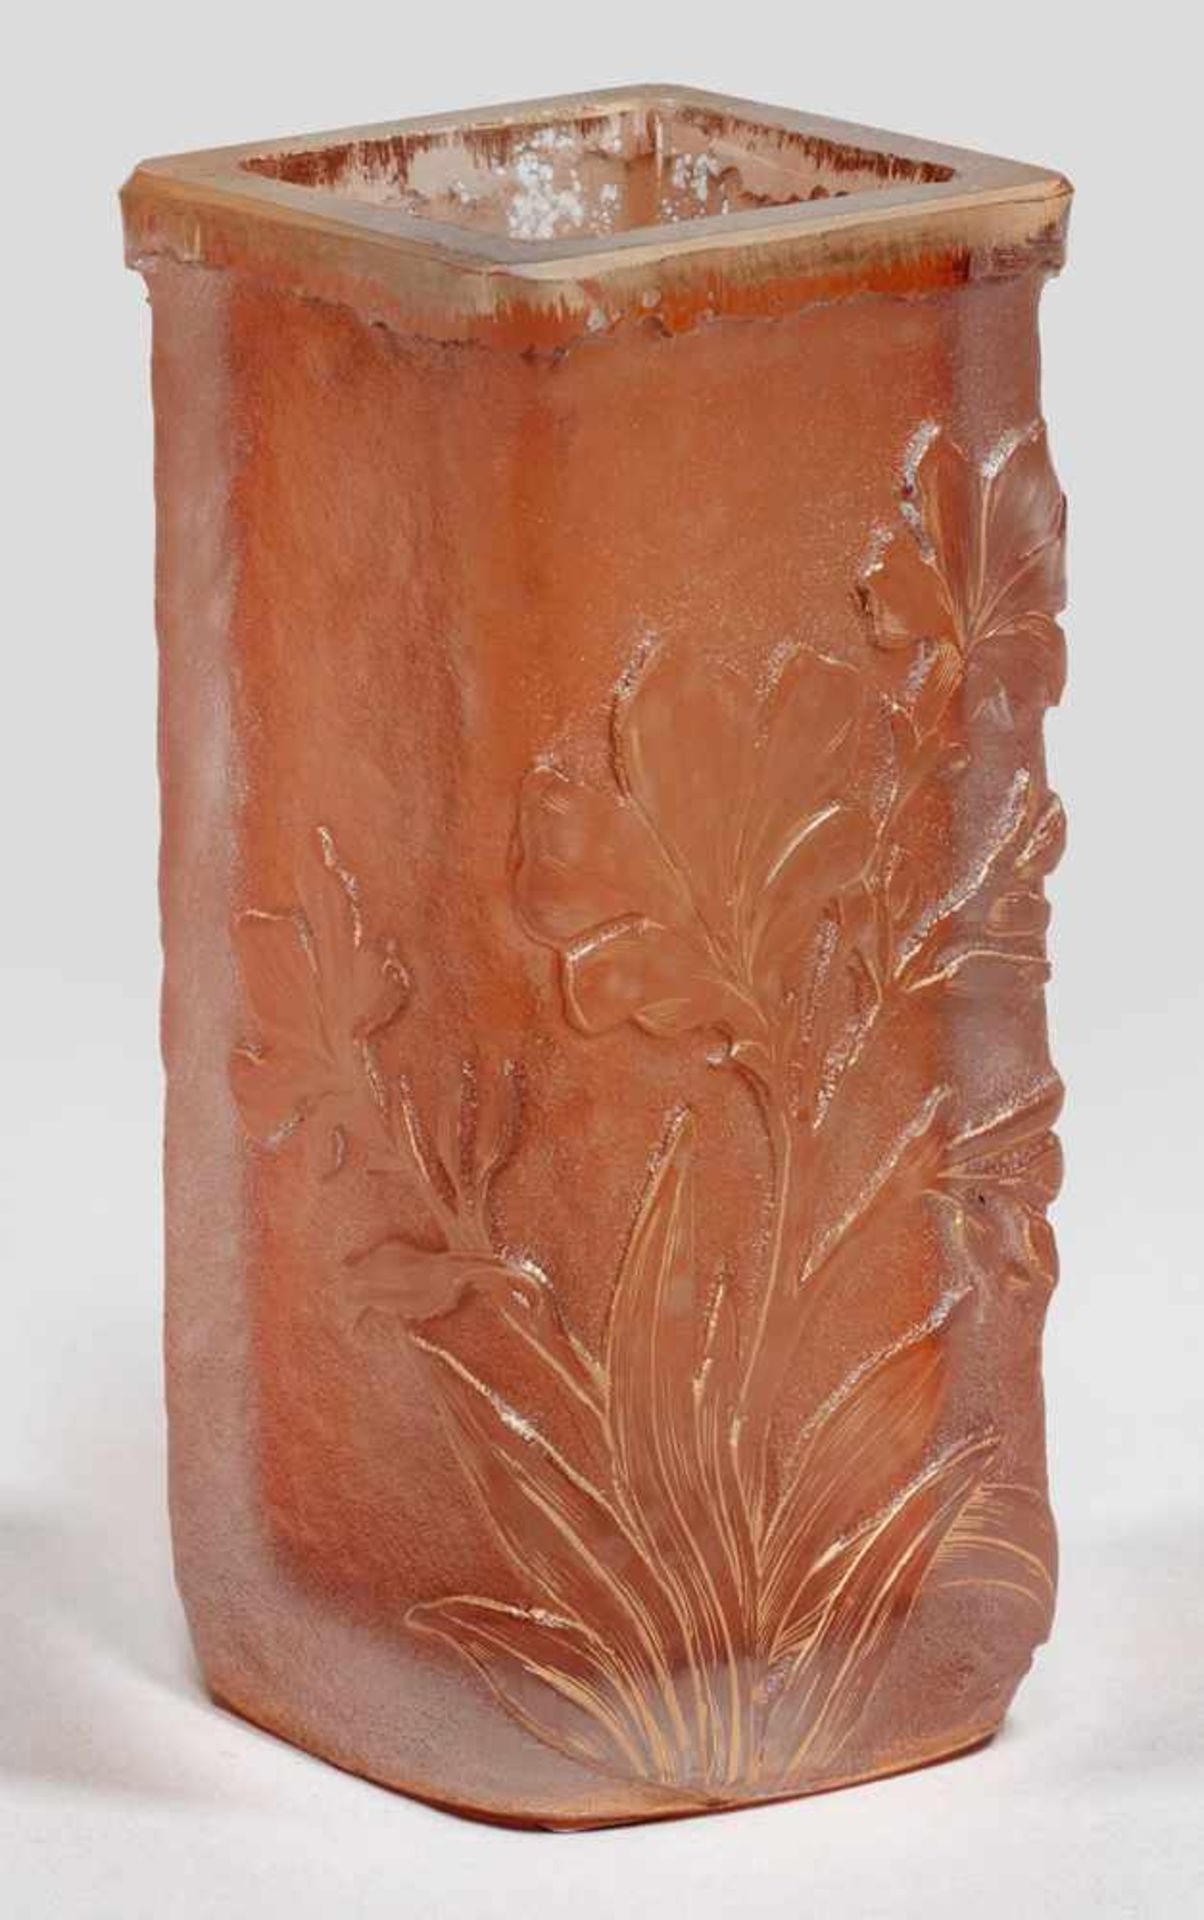 Ziervase mit floralem DekorBecherform mit quadratischen Querschnitt. Apricotfarbenes Glas.